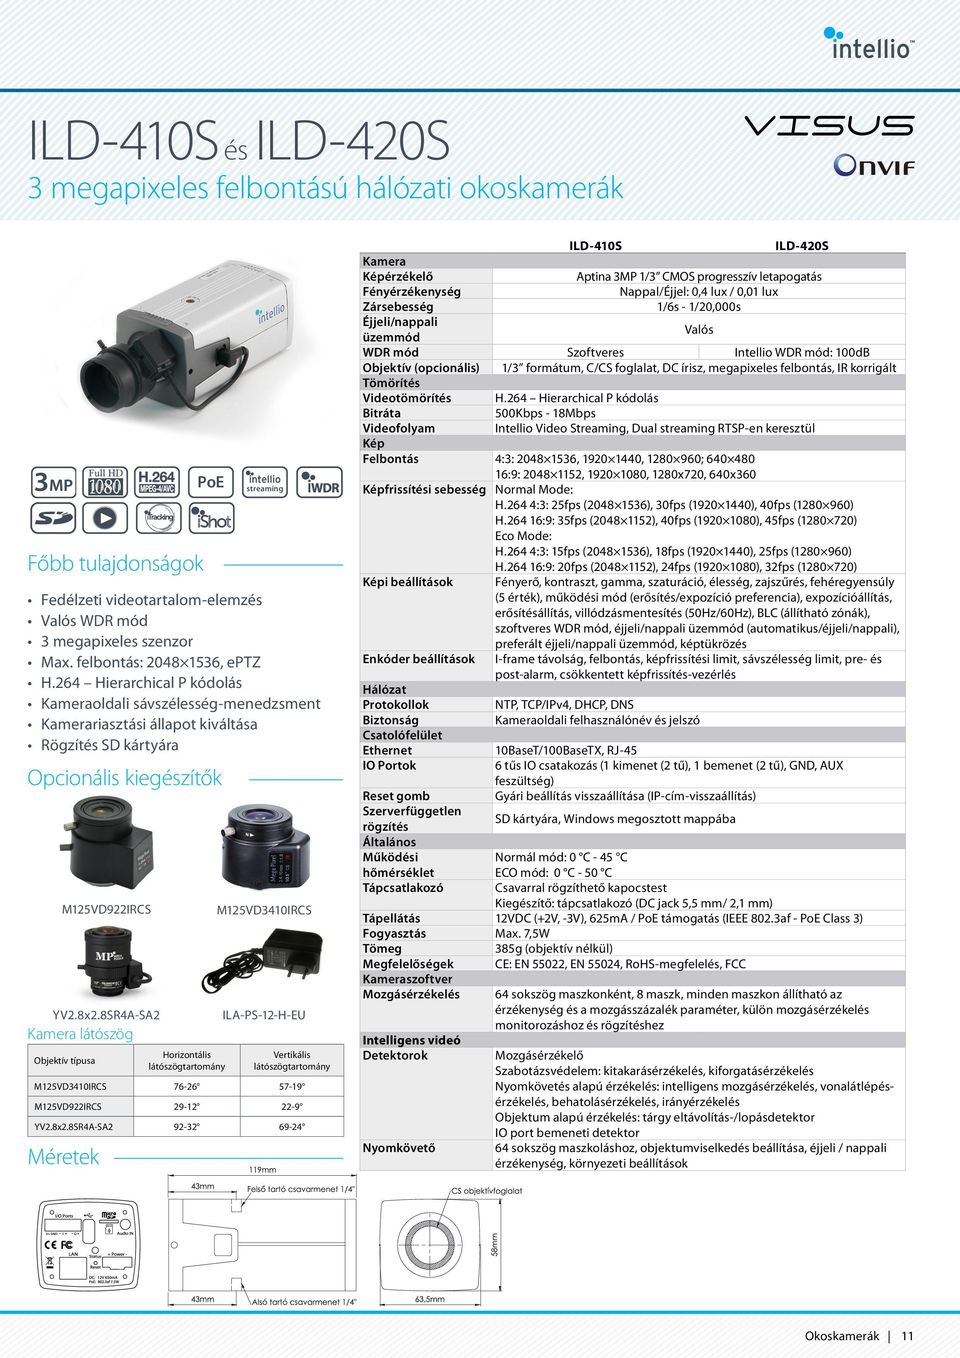 8SR4A-SA2 ILA-PS-12-H-EU Kamera látószög Horizontális Vertikális Objektív típusa Méretek PoE streaming M125VD3410IRCS 76-26 57-19 M125VD922IRCS 29-12 22-9 YV2.8x2.